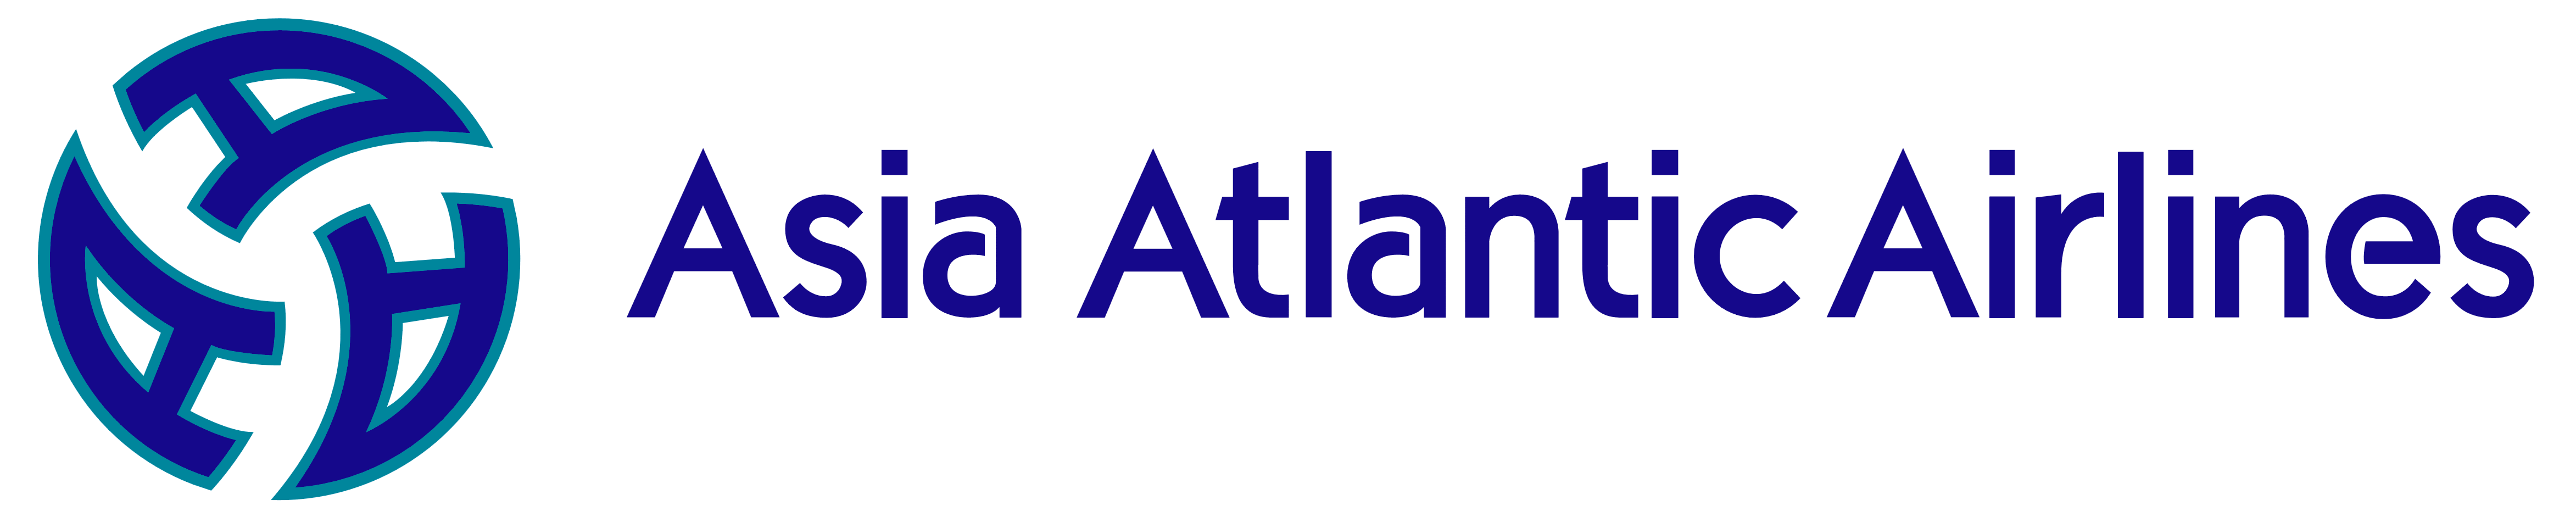 Asia Airlines Logo - Asia Atlantic Airlines